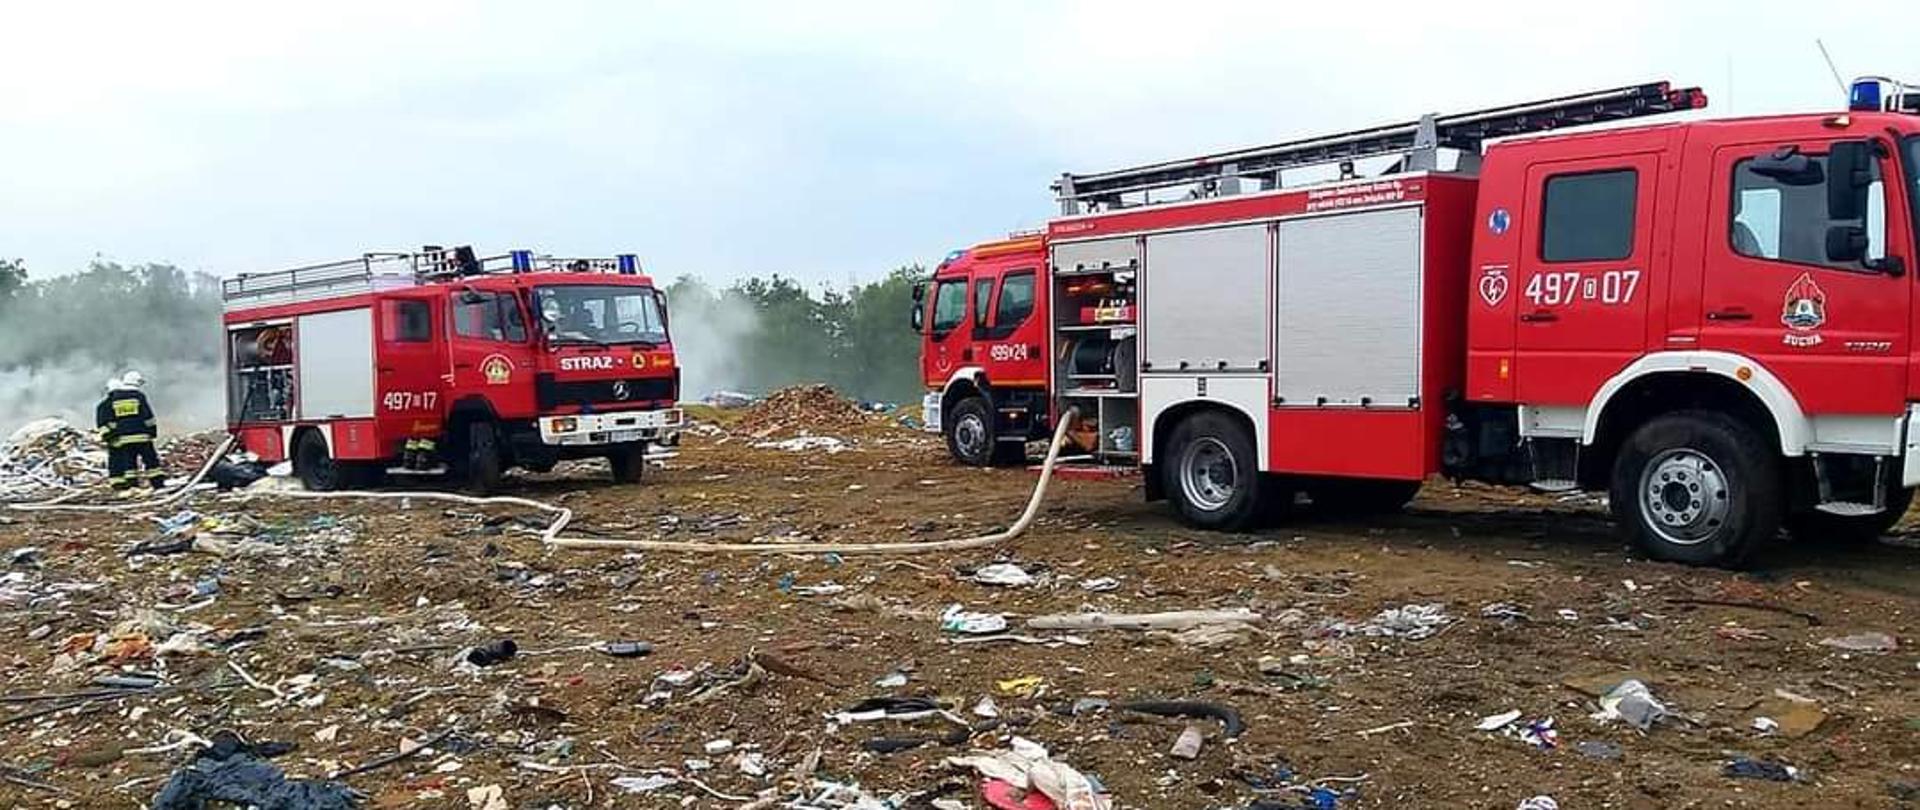 Zdjęcie przedstawia dwa samochody pożarnicze podczas gaszenia pożaru składowiska odpadów